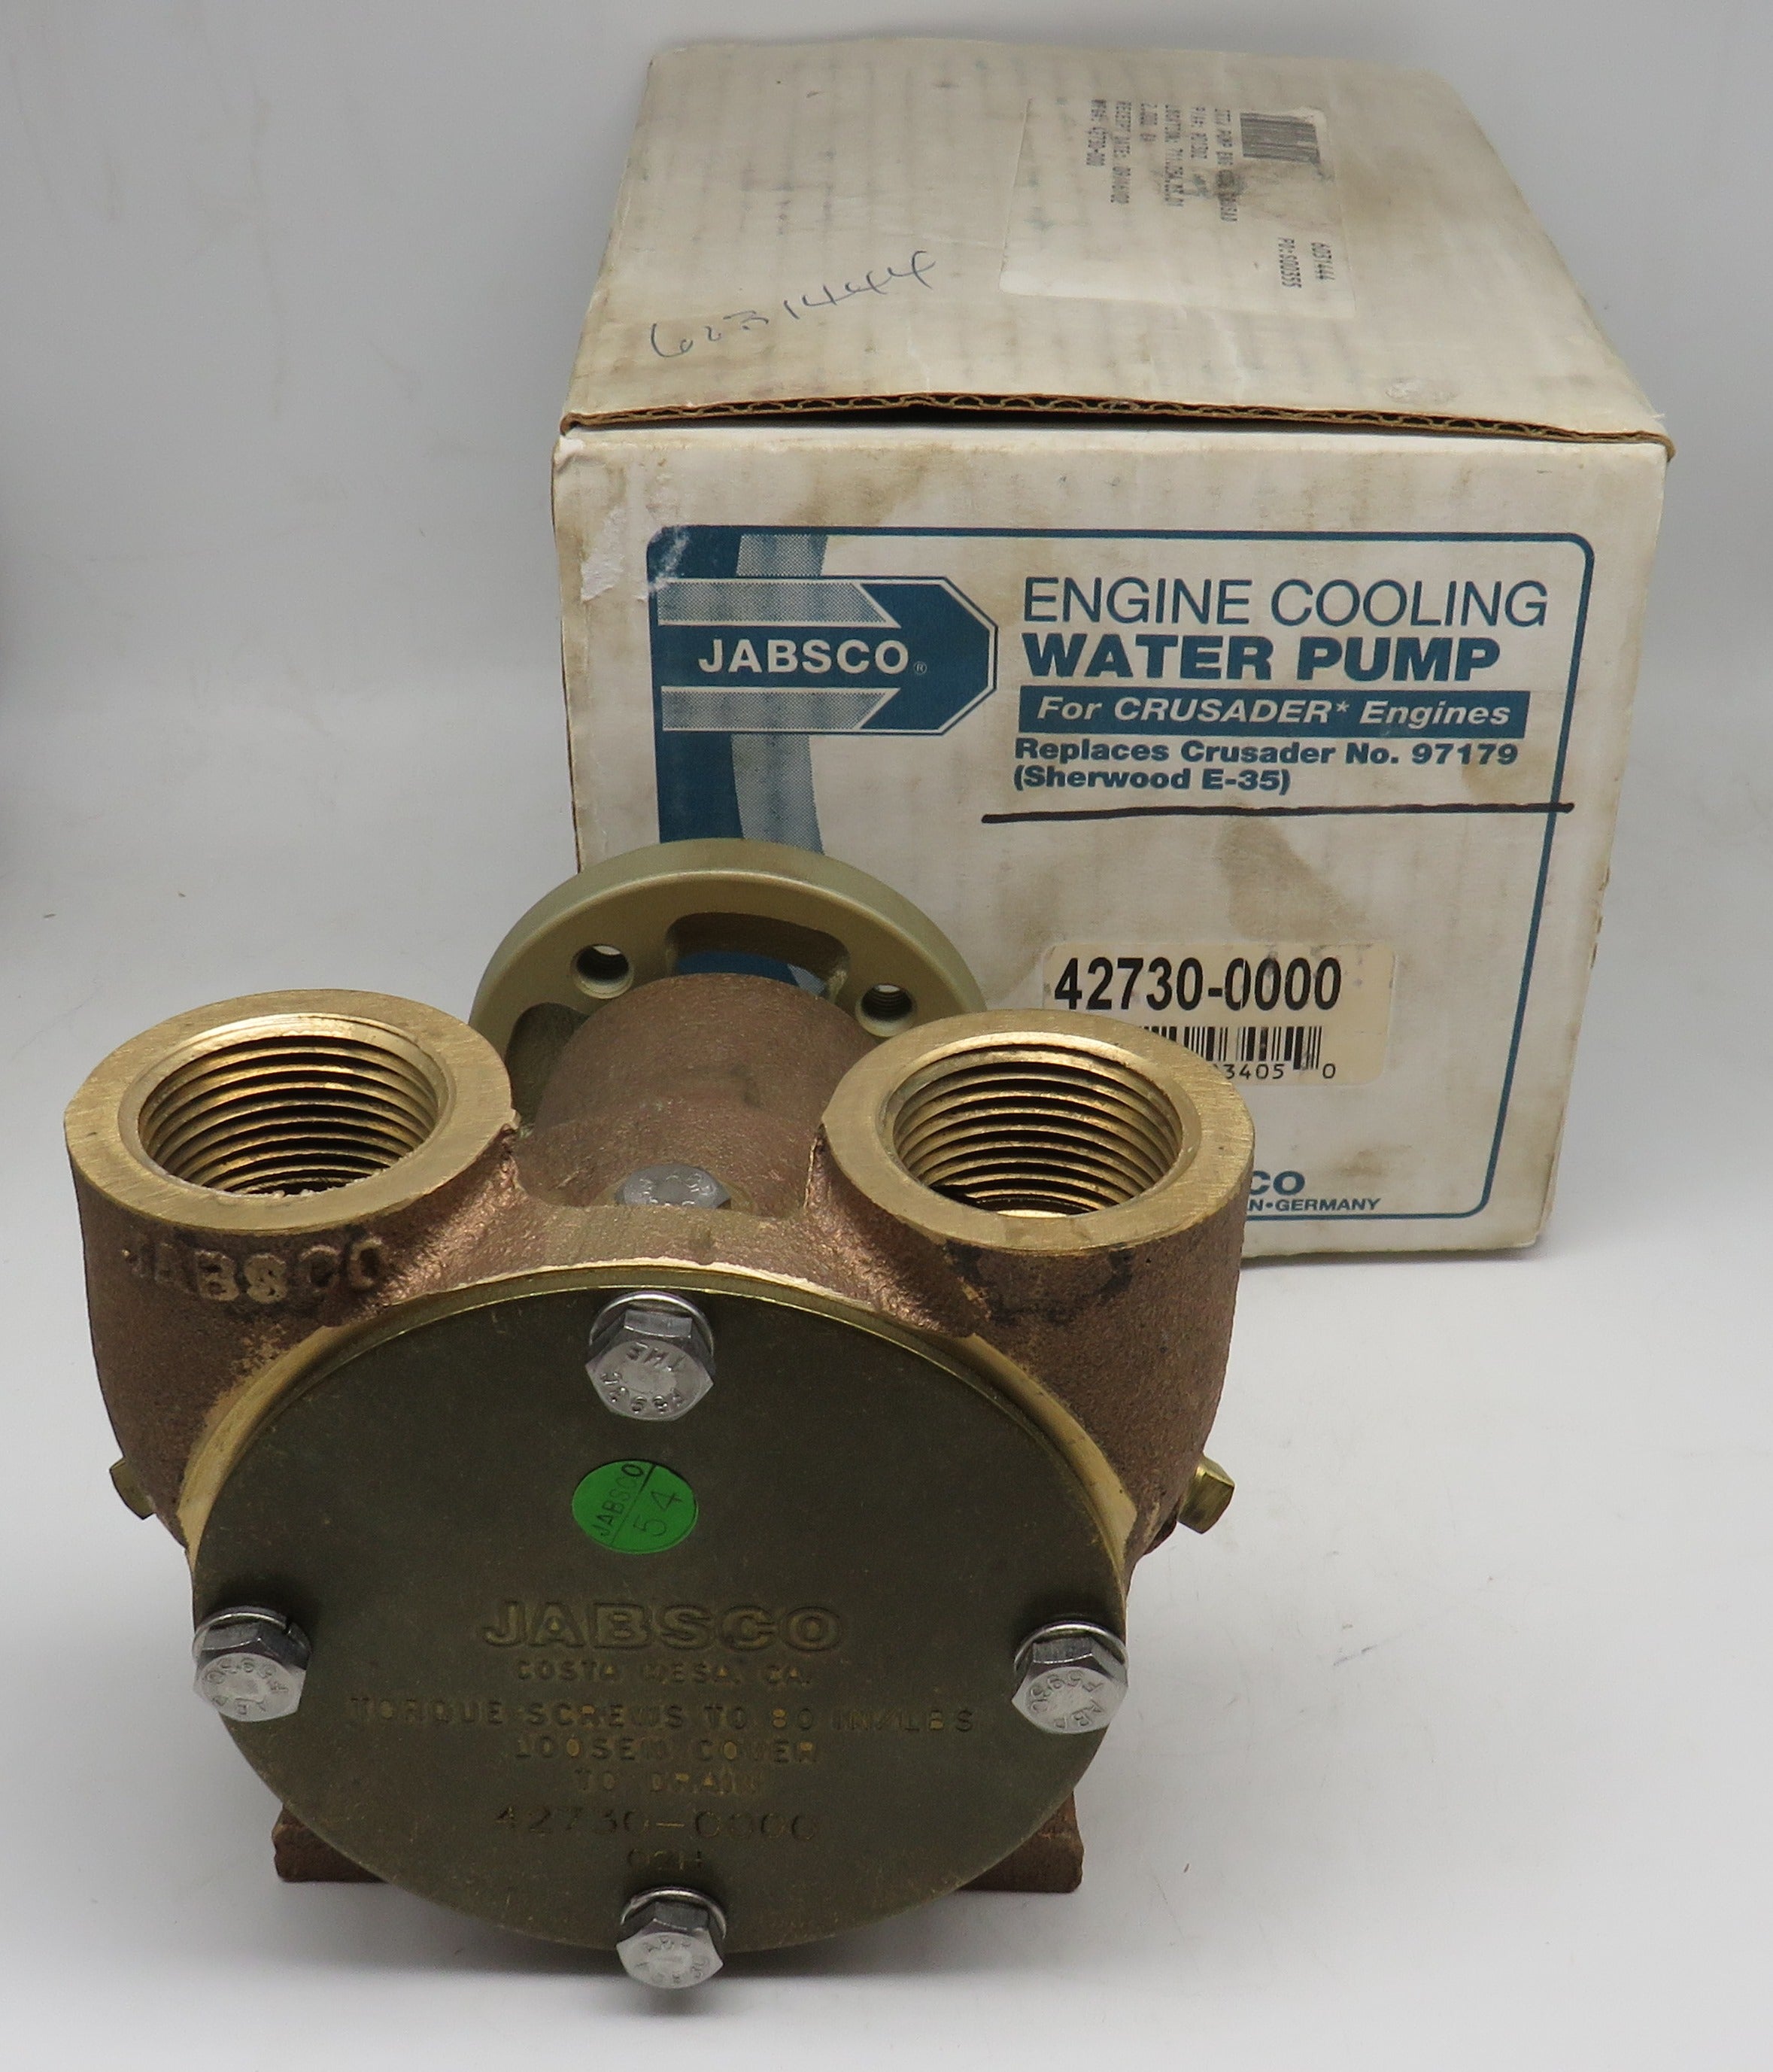 42730-0000 Jabsco Par Engine Cooling Water Pump for Crusader Engines. Pedestal Mount Pump Replaces Crusader No 97179 (Sherwood E-35)